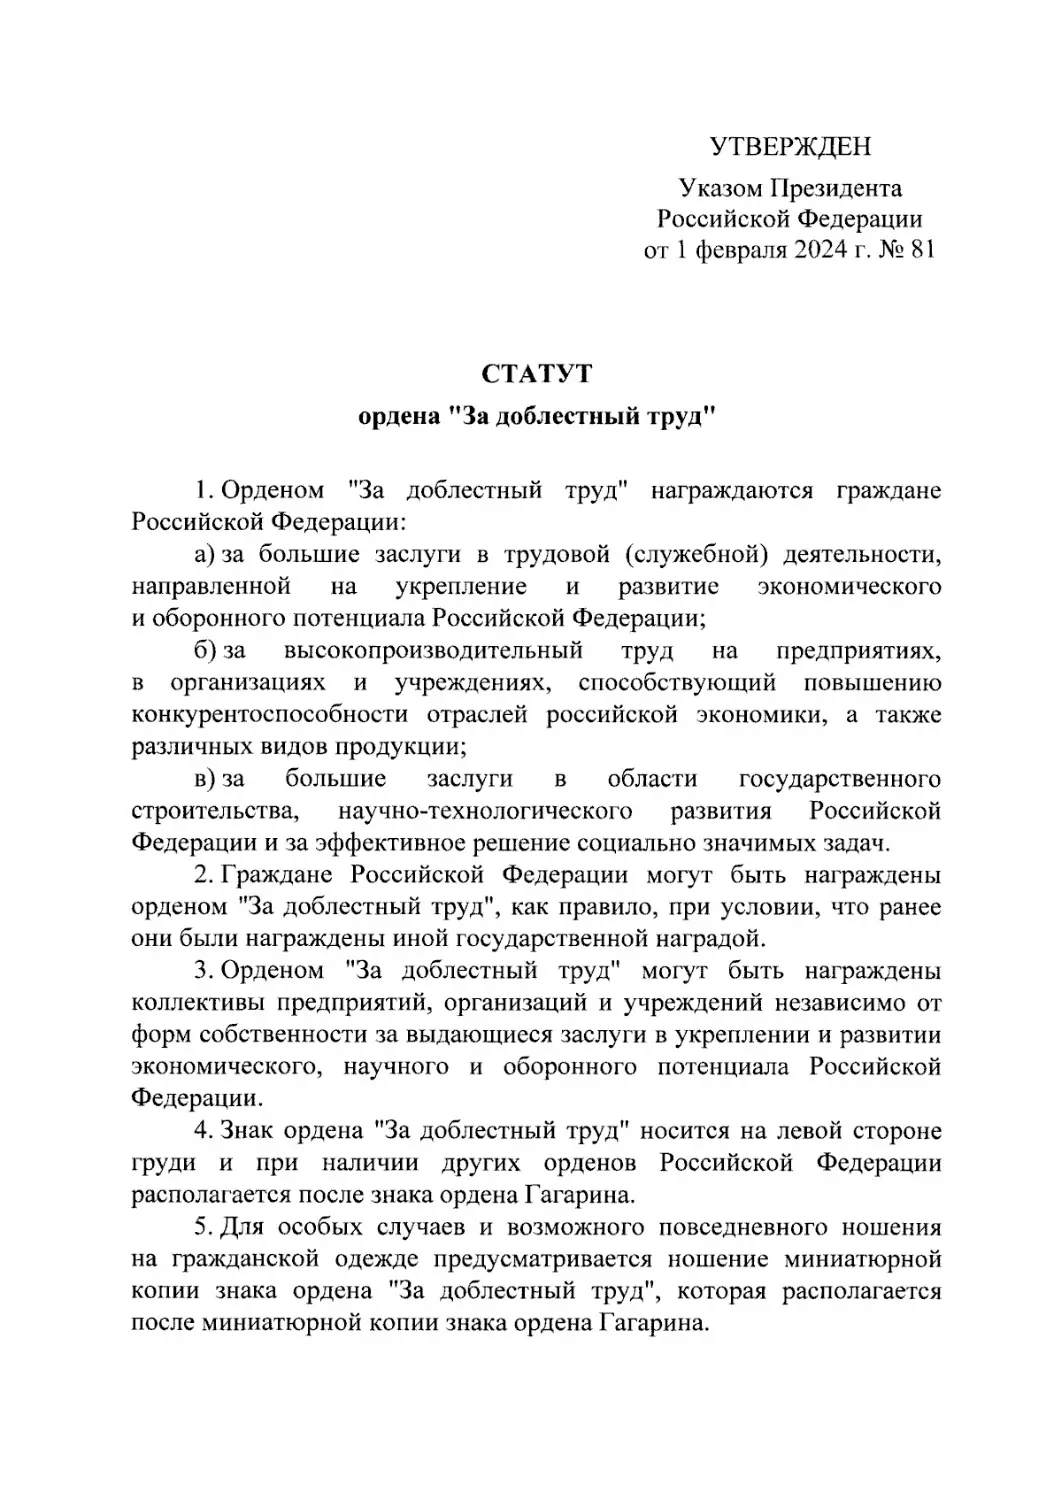 Президент России подписал указ об учреждении ордена «За доблестный труд».